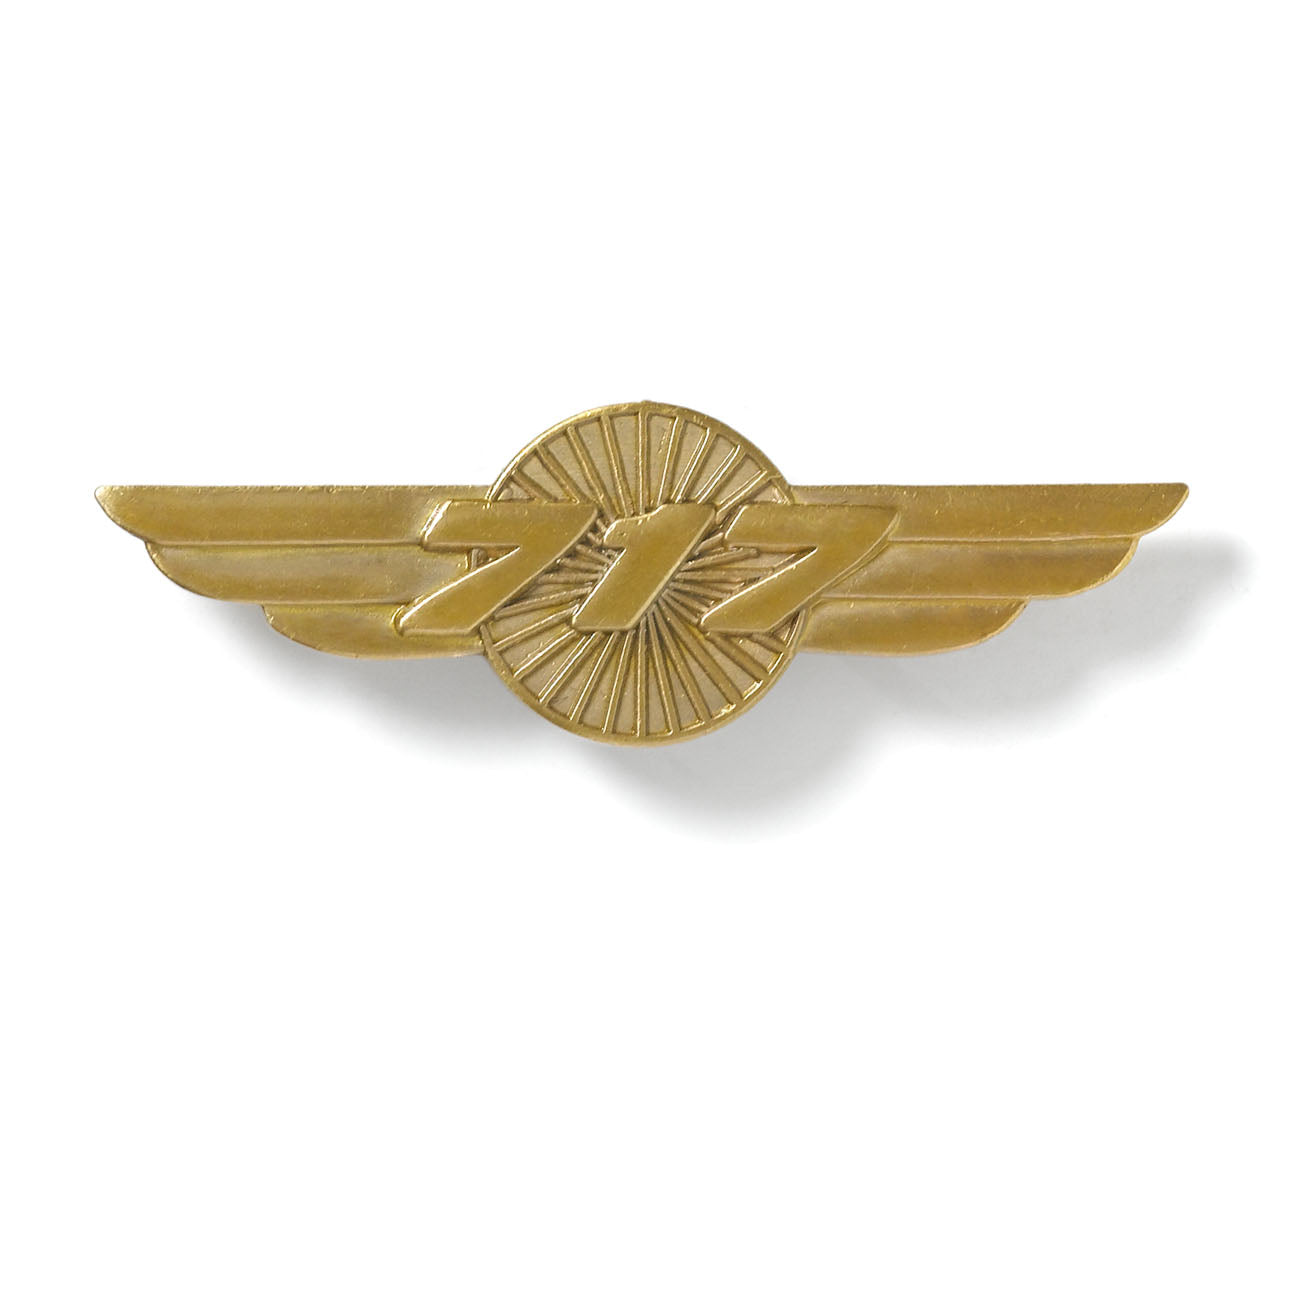 Boeing 717 Wings Pin (6402879558)